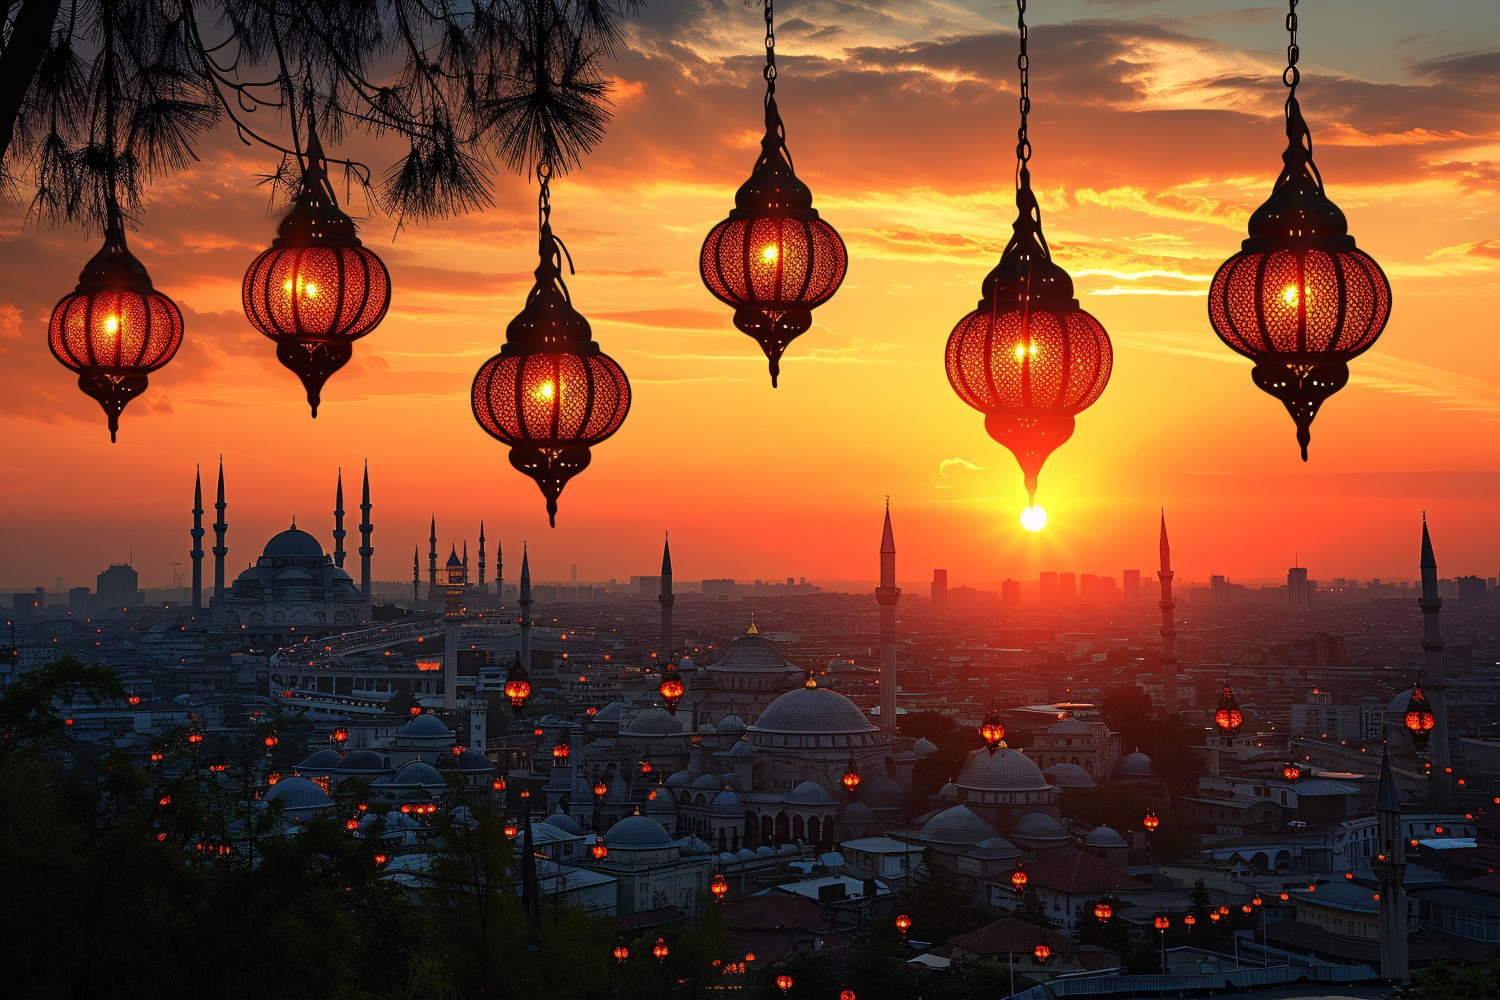 Ramadan Kareem greeting card banner poster design with lantern & mosque